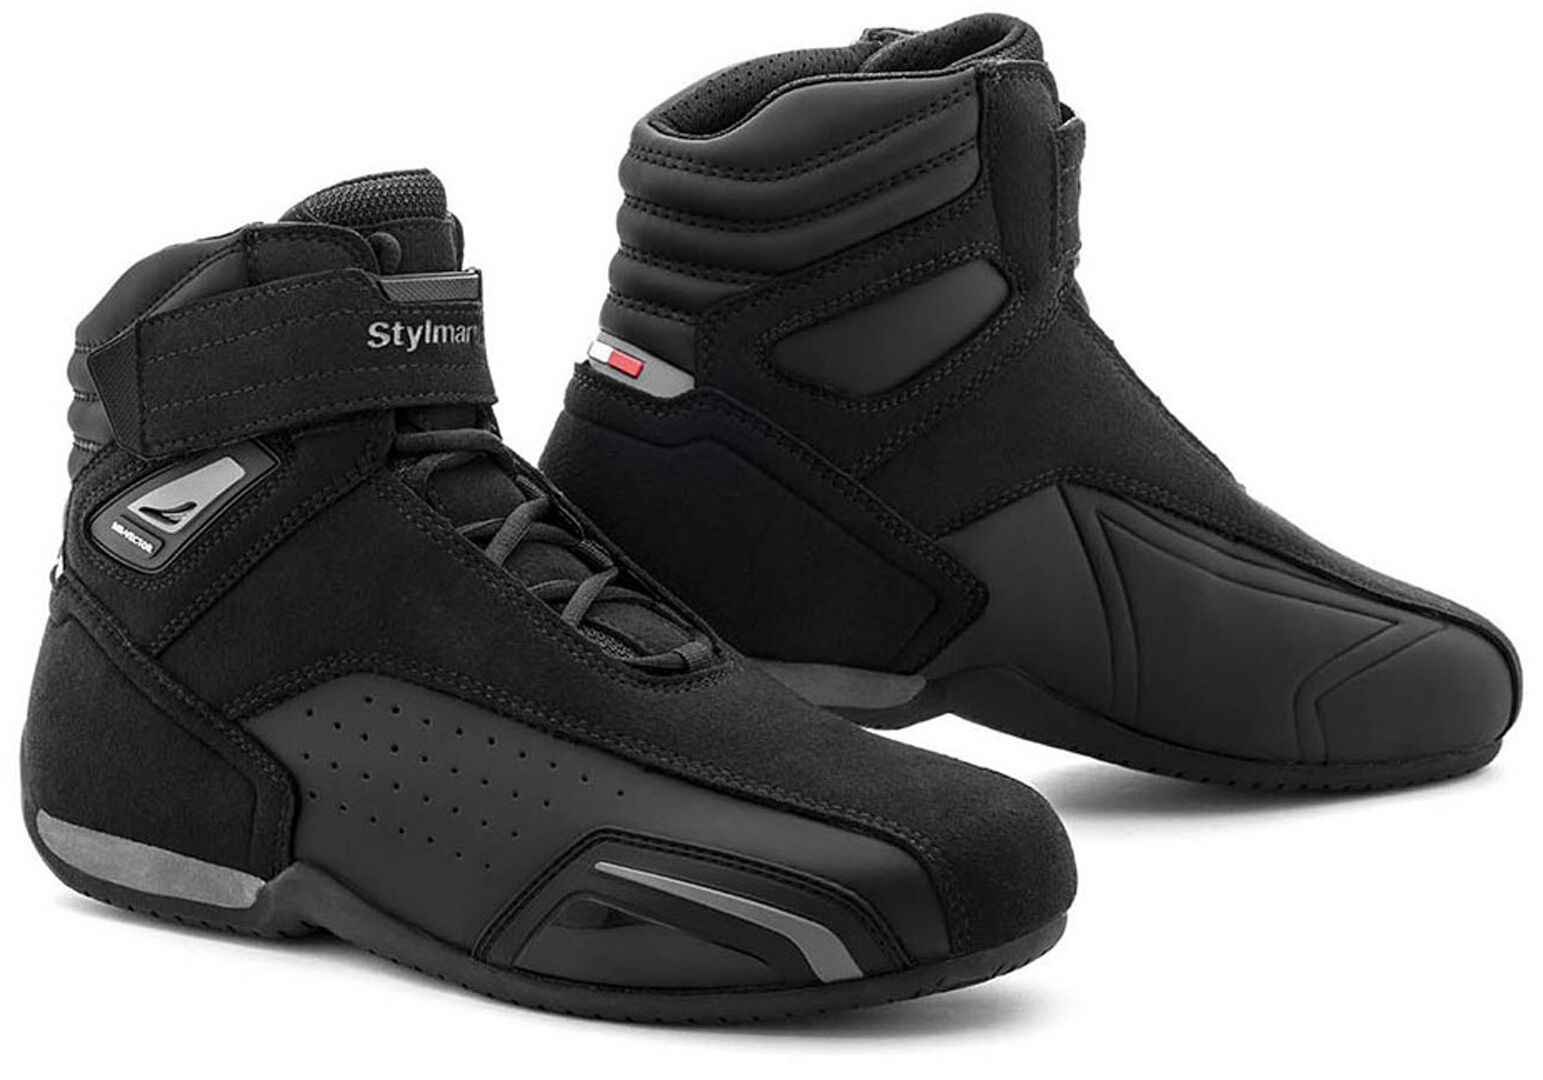 Stylmartin Vector Air Zapatos de moto - Negro (36)